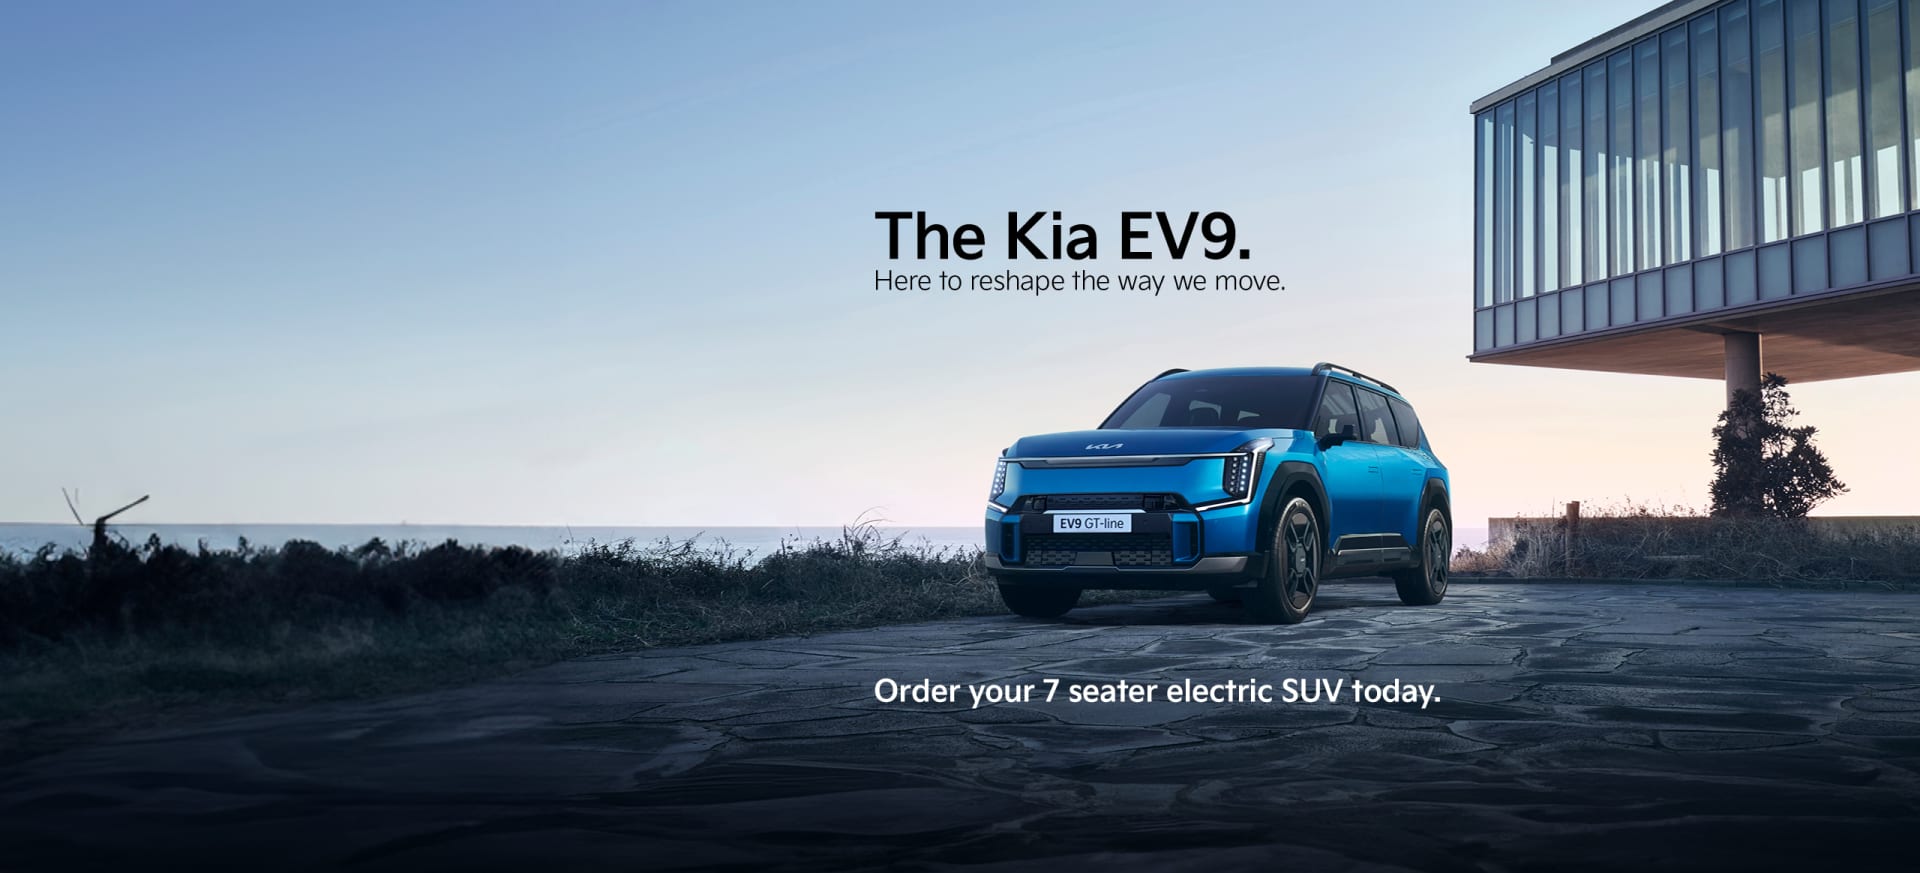 The Kia EV9 